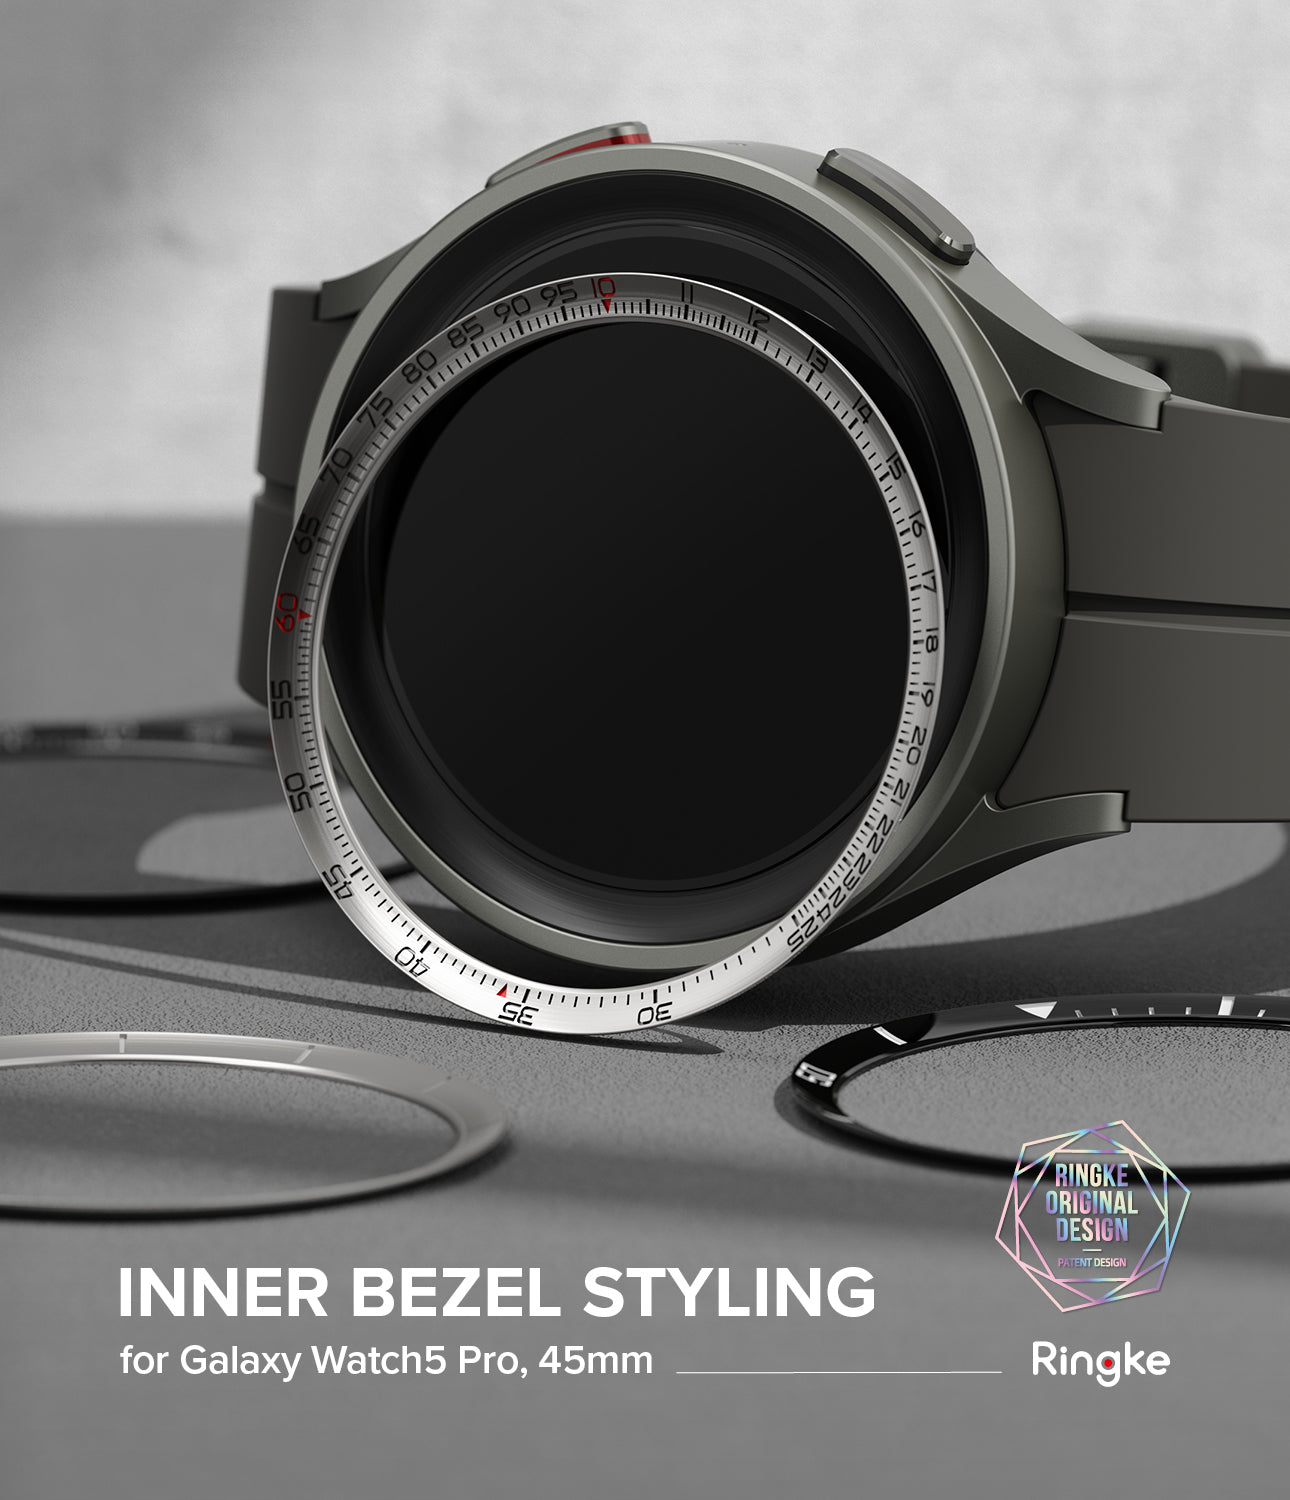 Galaxy Watch 5 Pro 45mm Ringke Inner Bezel Styling 02 Black